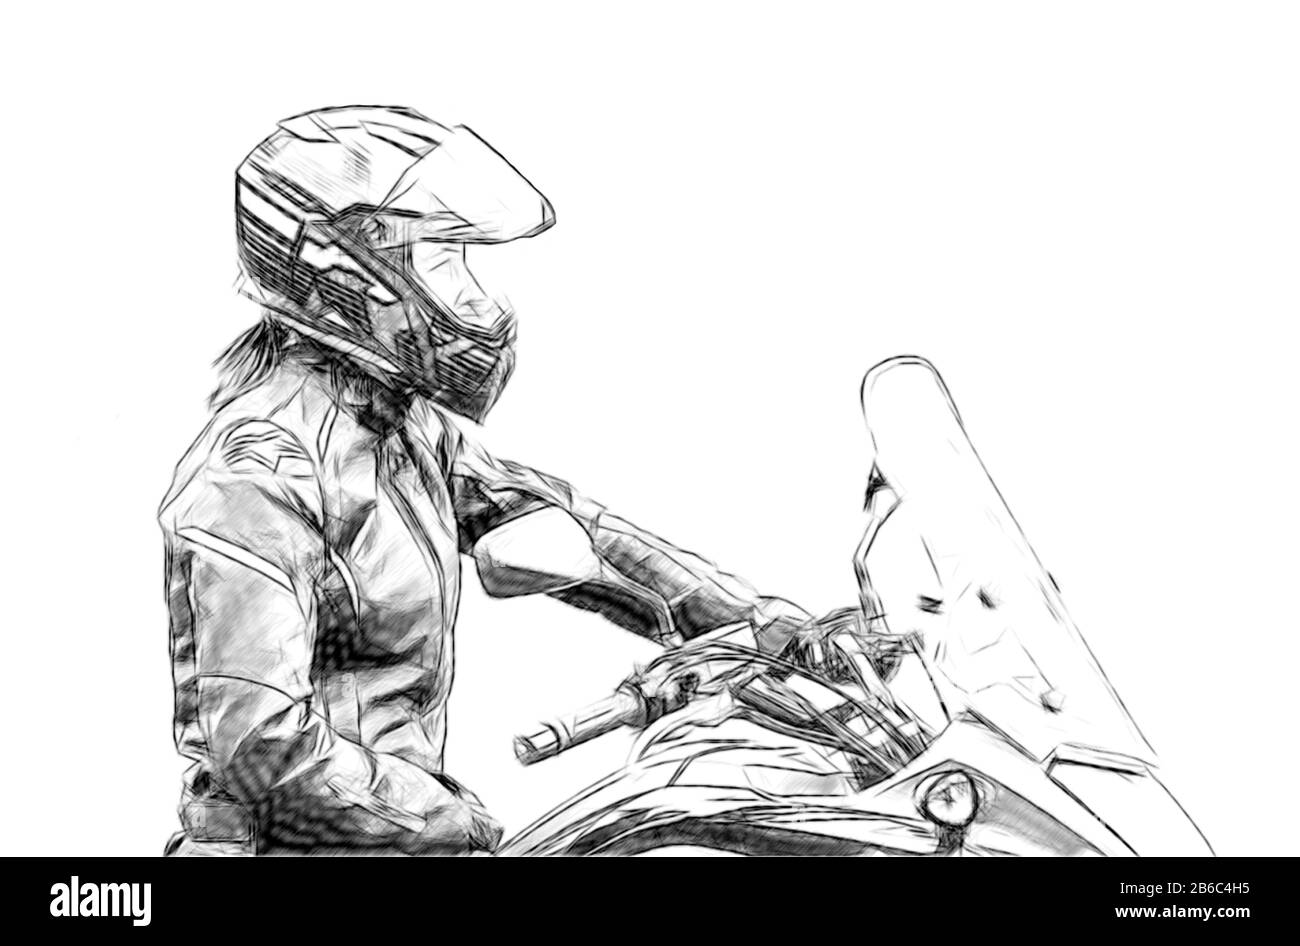 Motorcycle gymkhana sport. A biker on a motorcycle Motorcycling Stock Photo